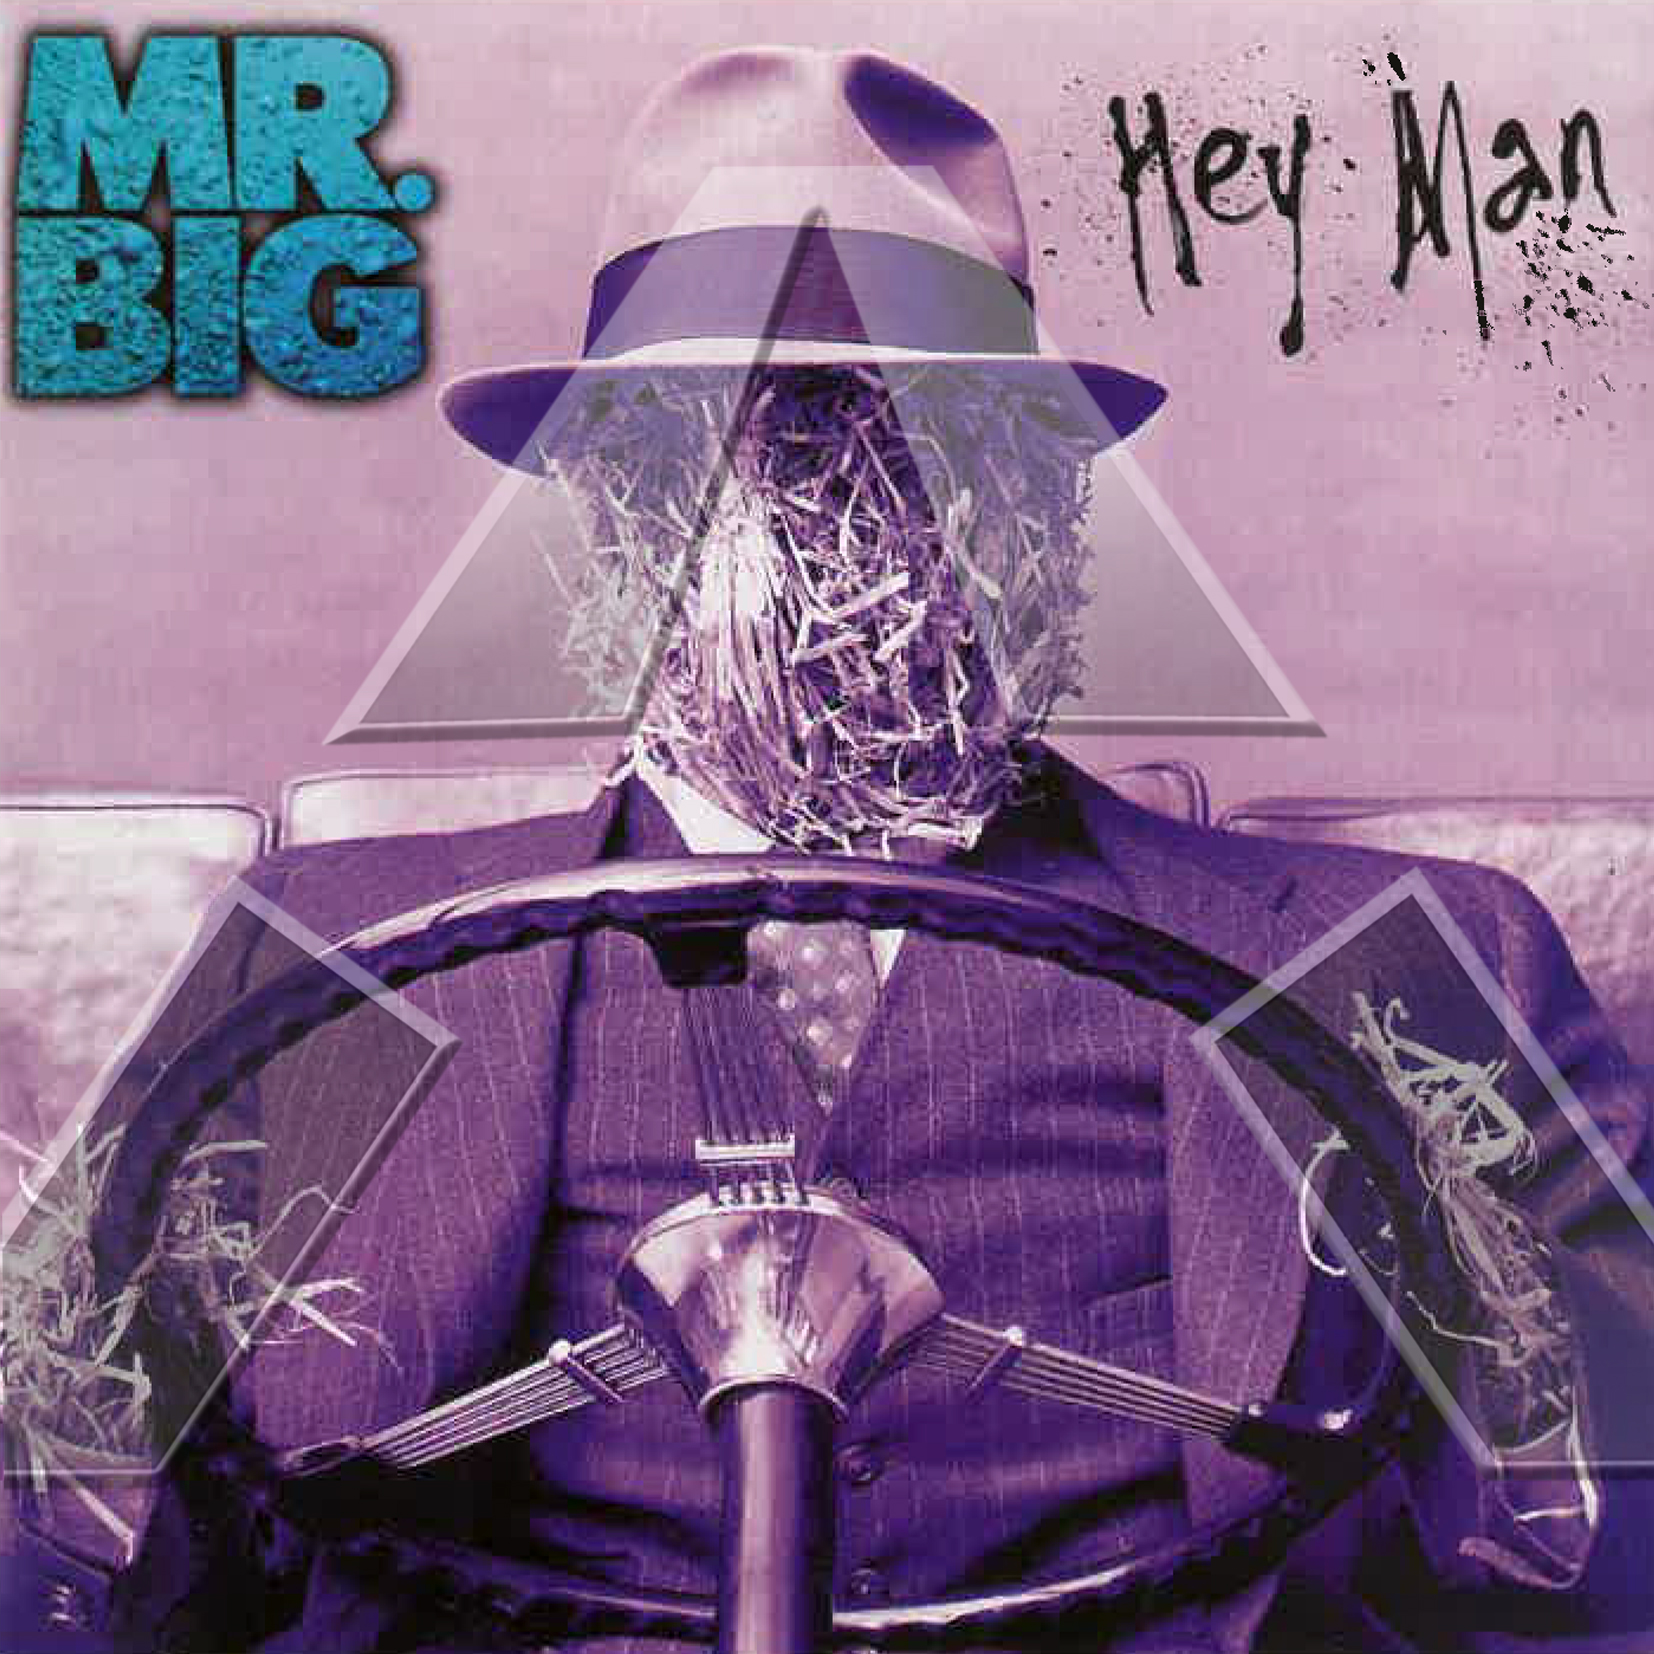 Mr. Big ★ Hey Man (cd album EU 7567806482)